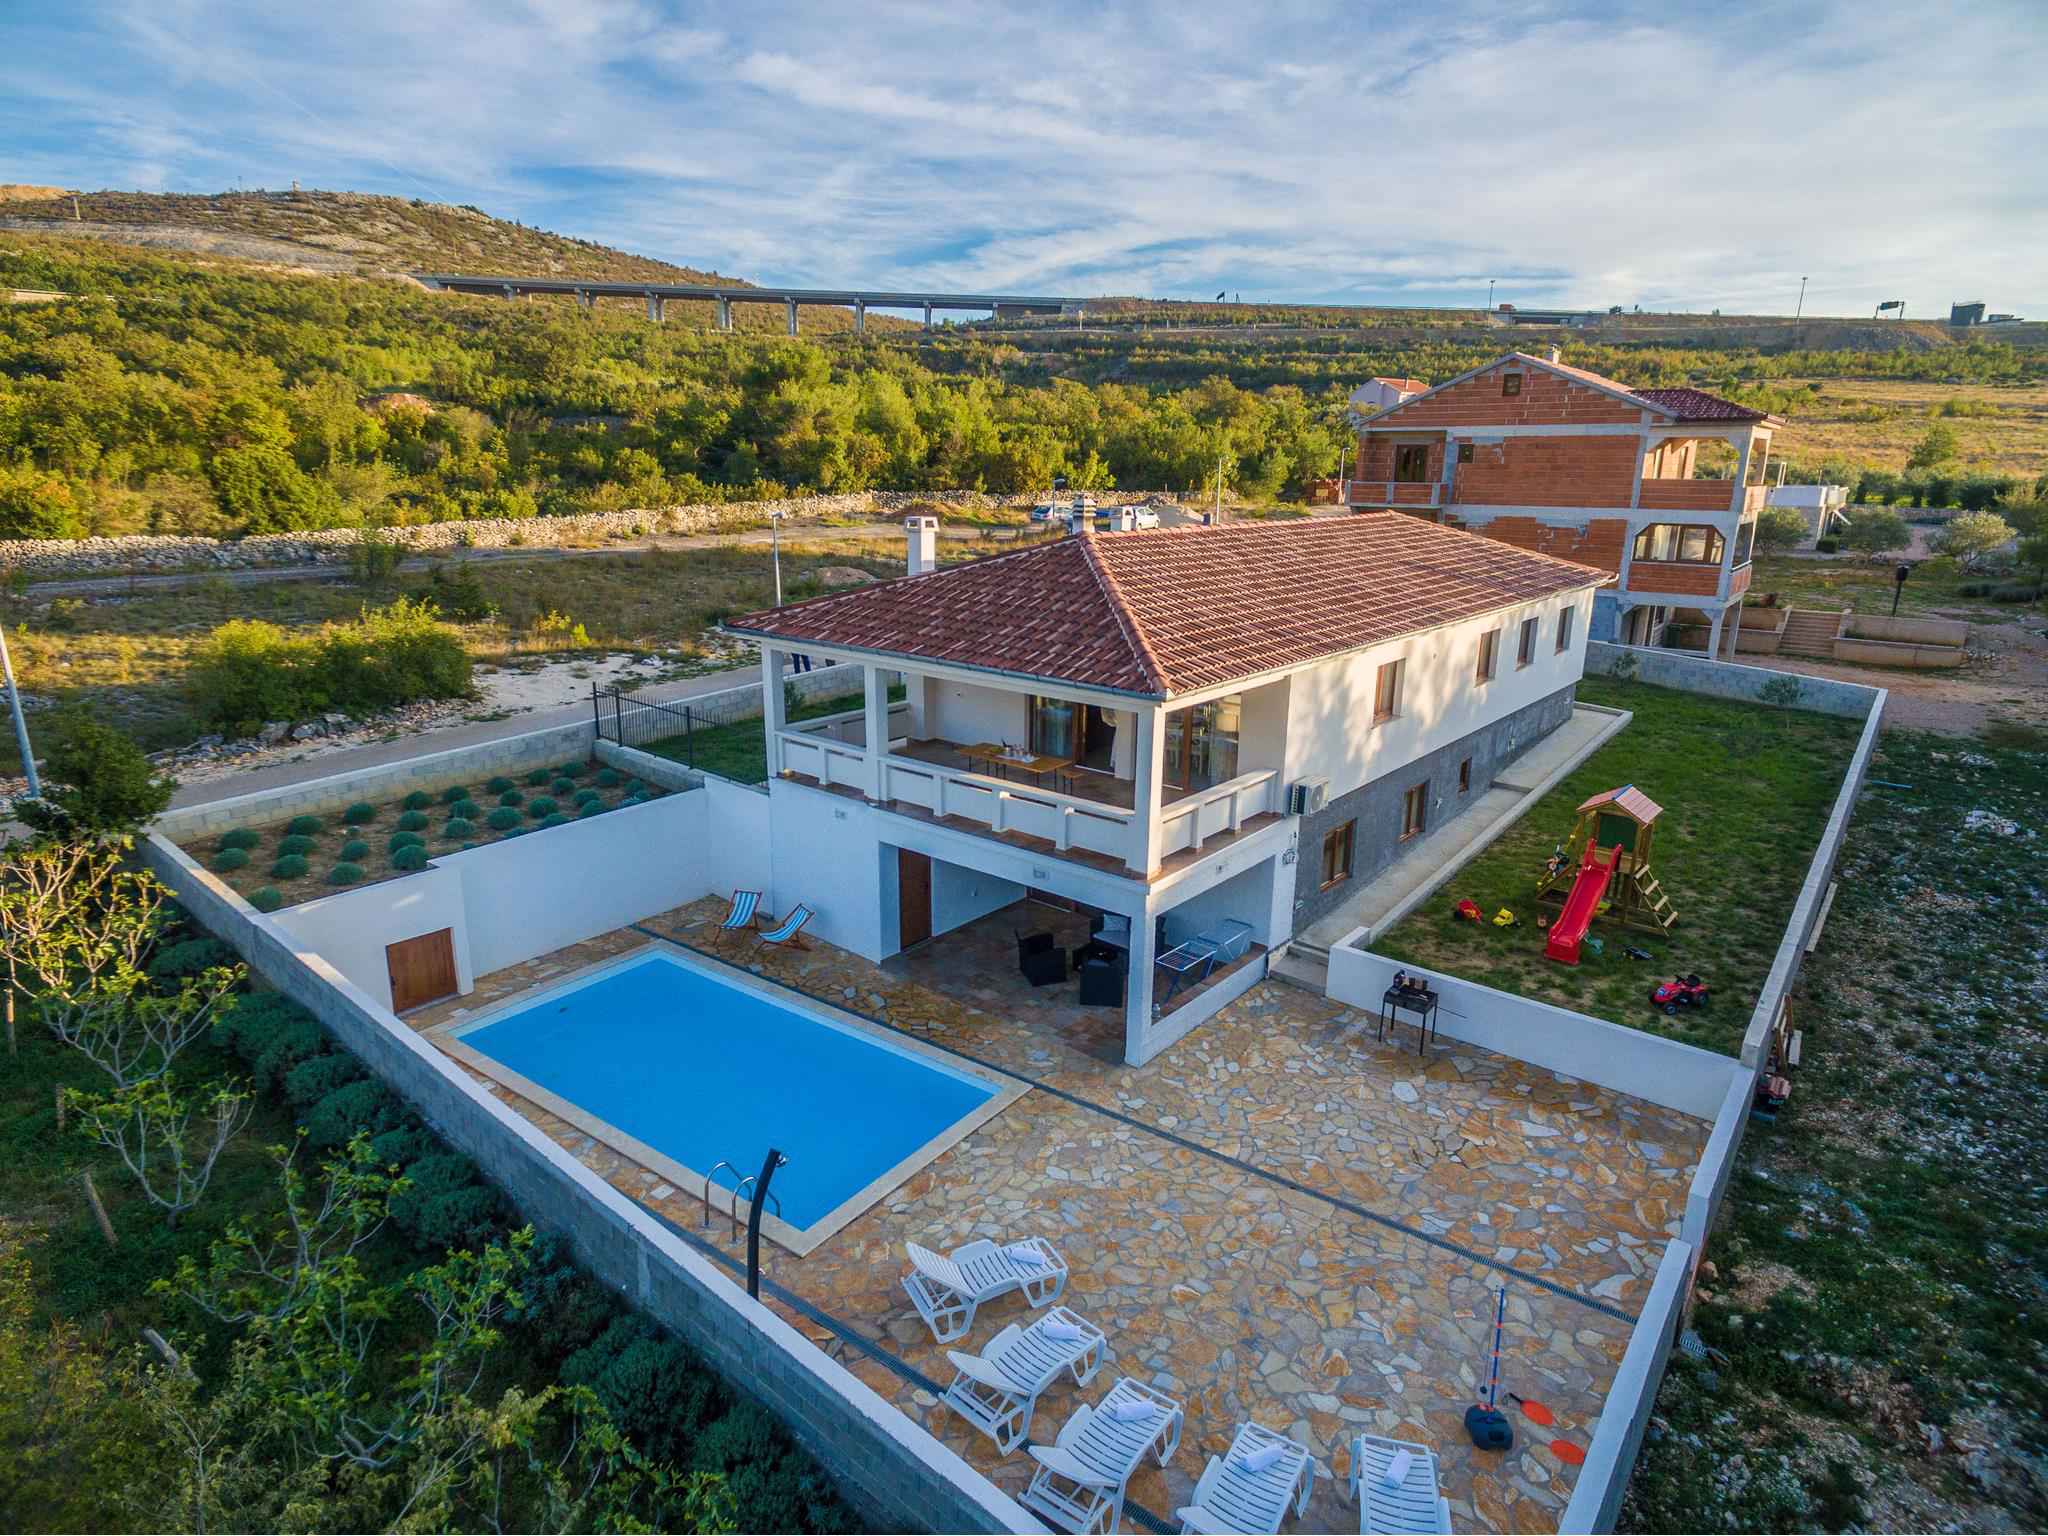 Ferienhaus mit Pool Ferienhaus in Kroatien